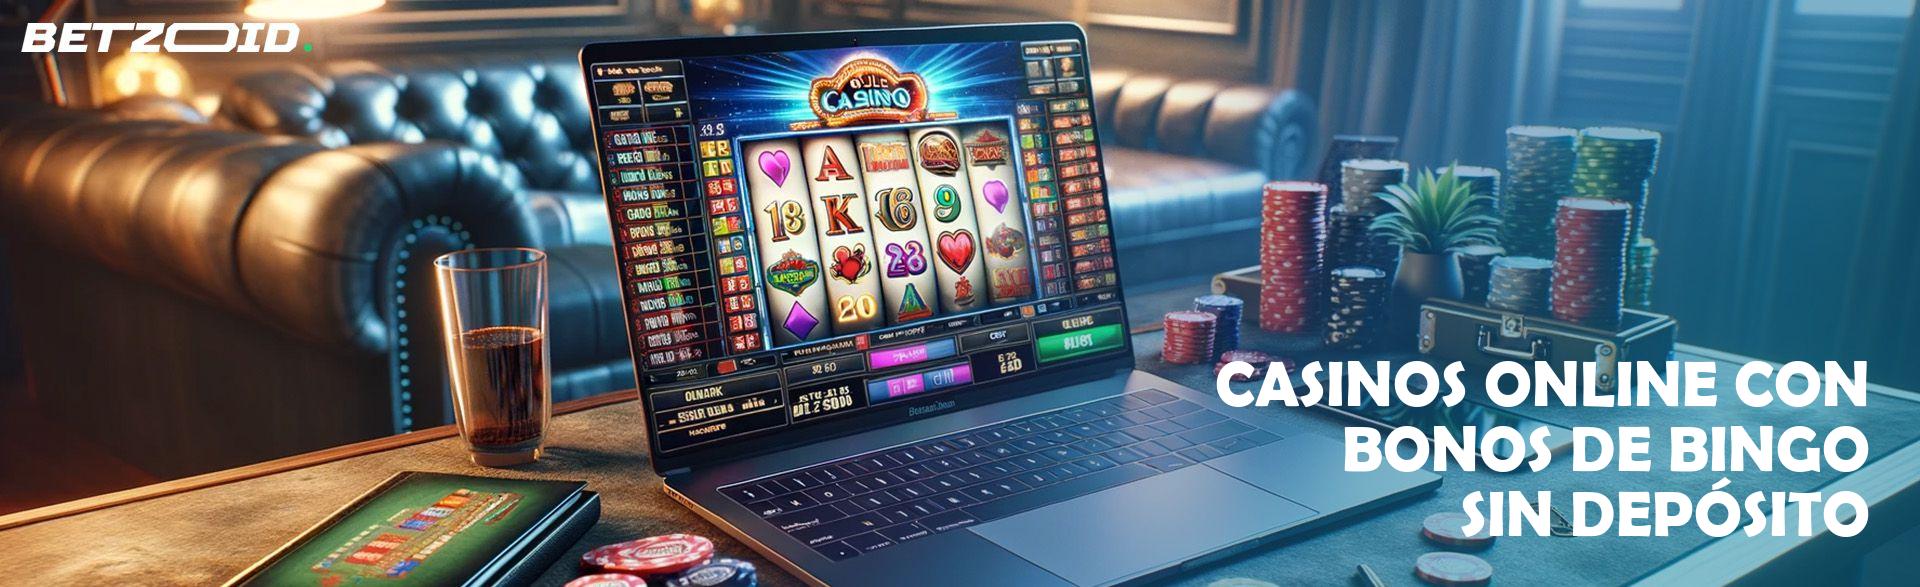 Casinos Online con Bonos de Bingo sin Depósito.